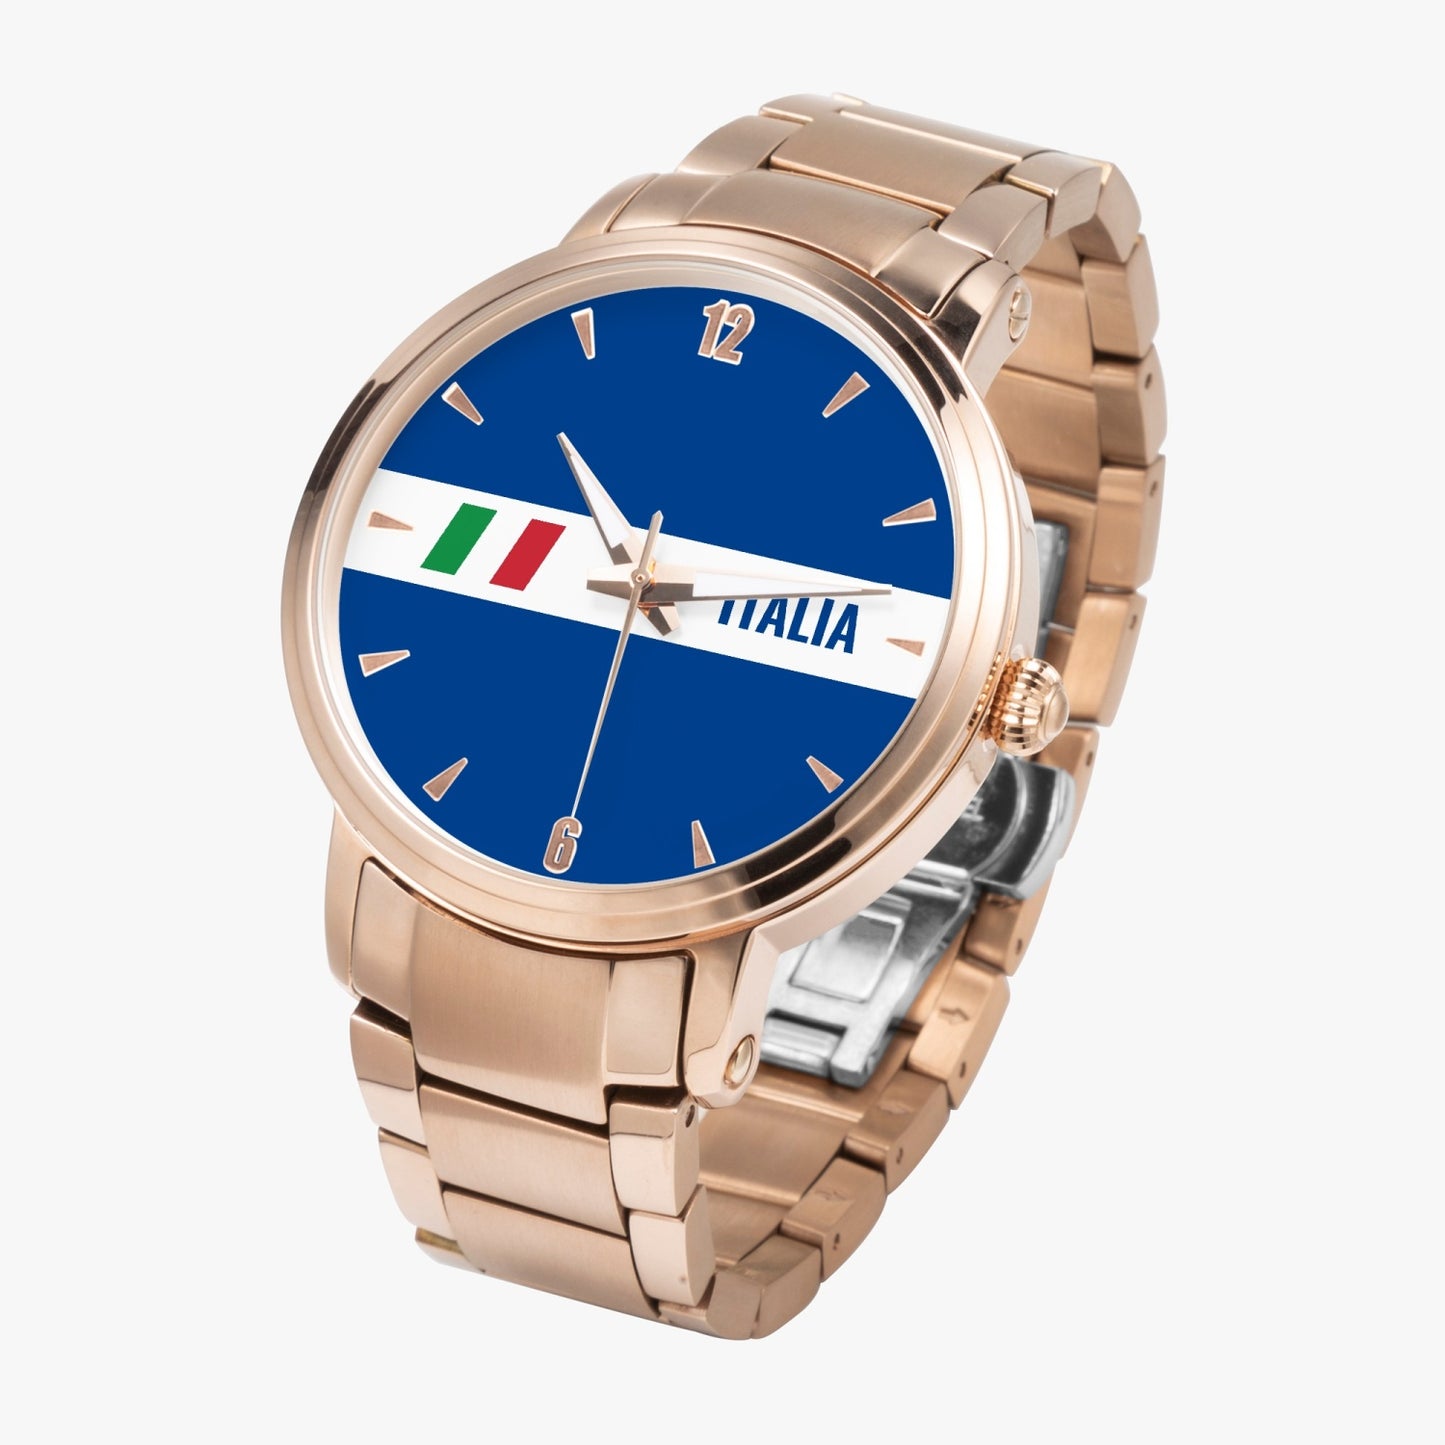 Orologio con movimento automatico Italia - Acciaio inossidabile di alta qualità